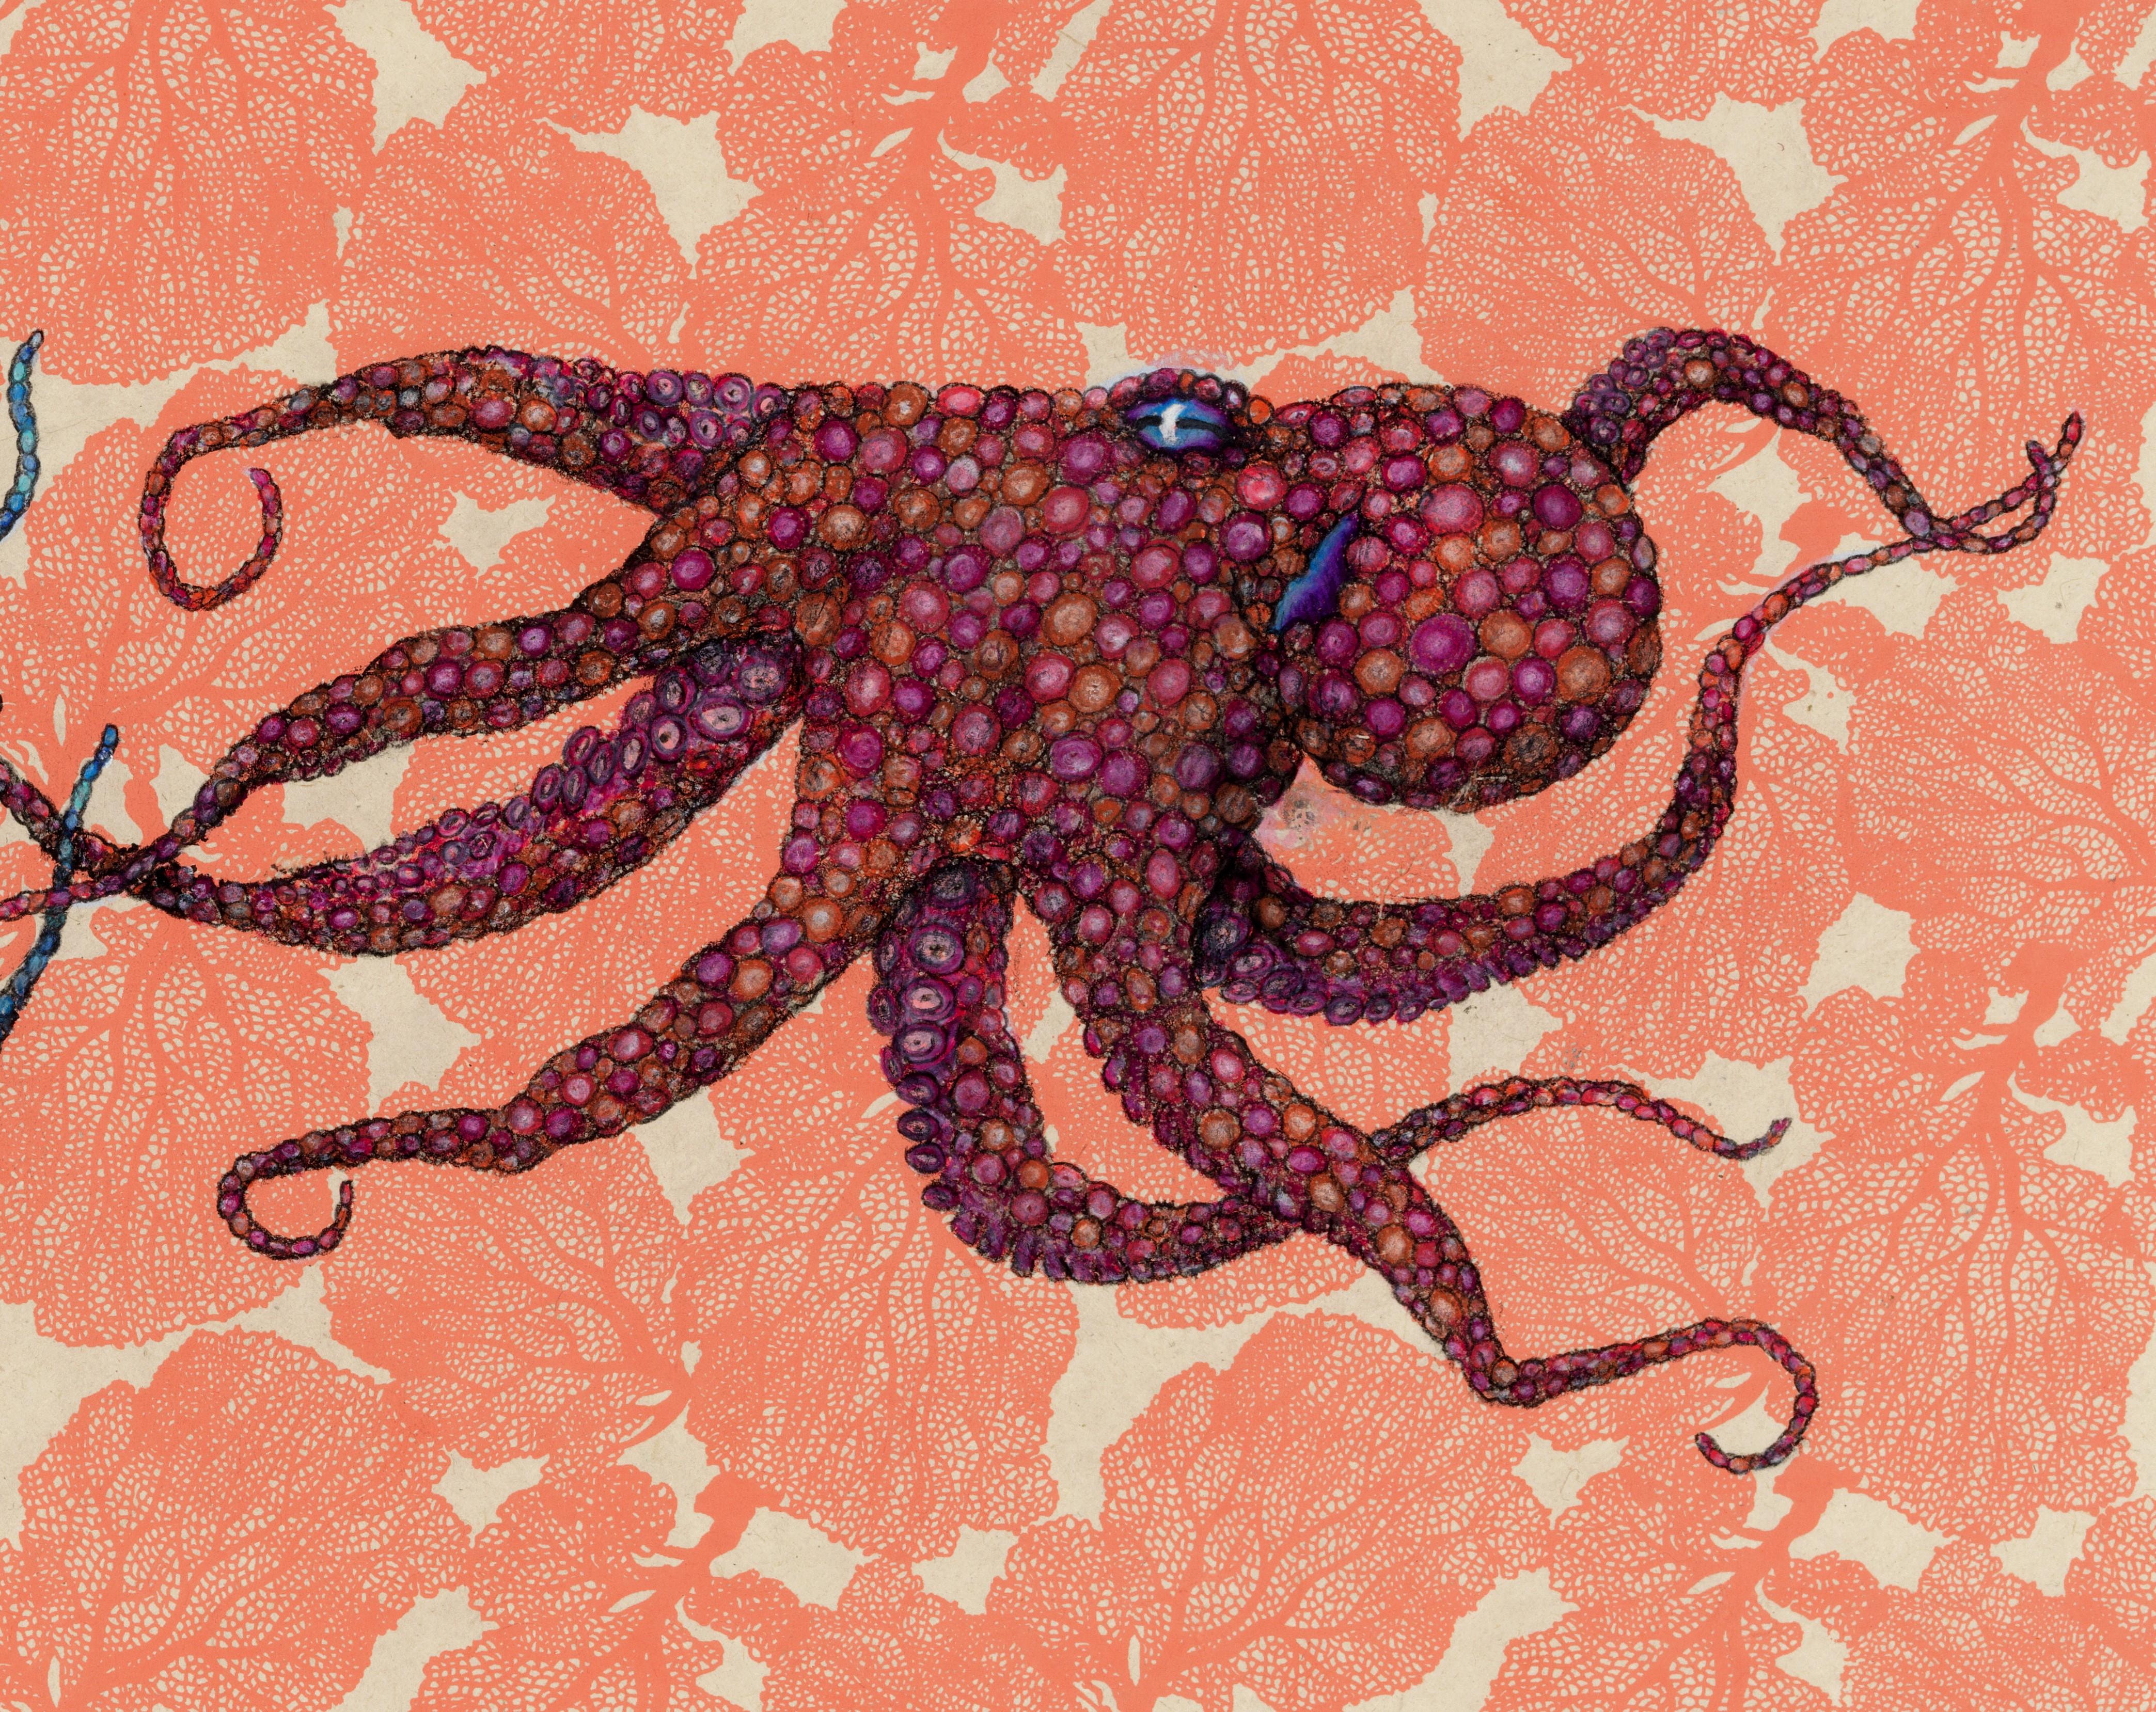 Éventail de mer - Bleu rencontre le rouge - Peinture à l'encre Sumi de style Gyotaku représentant un octope  - Art de Jeff Conroy